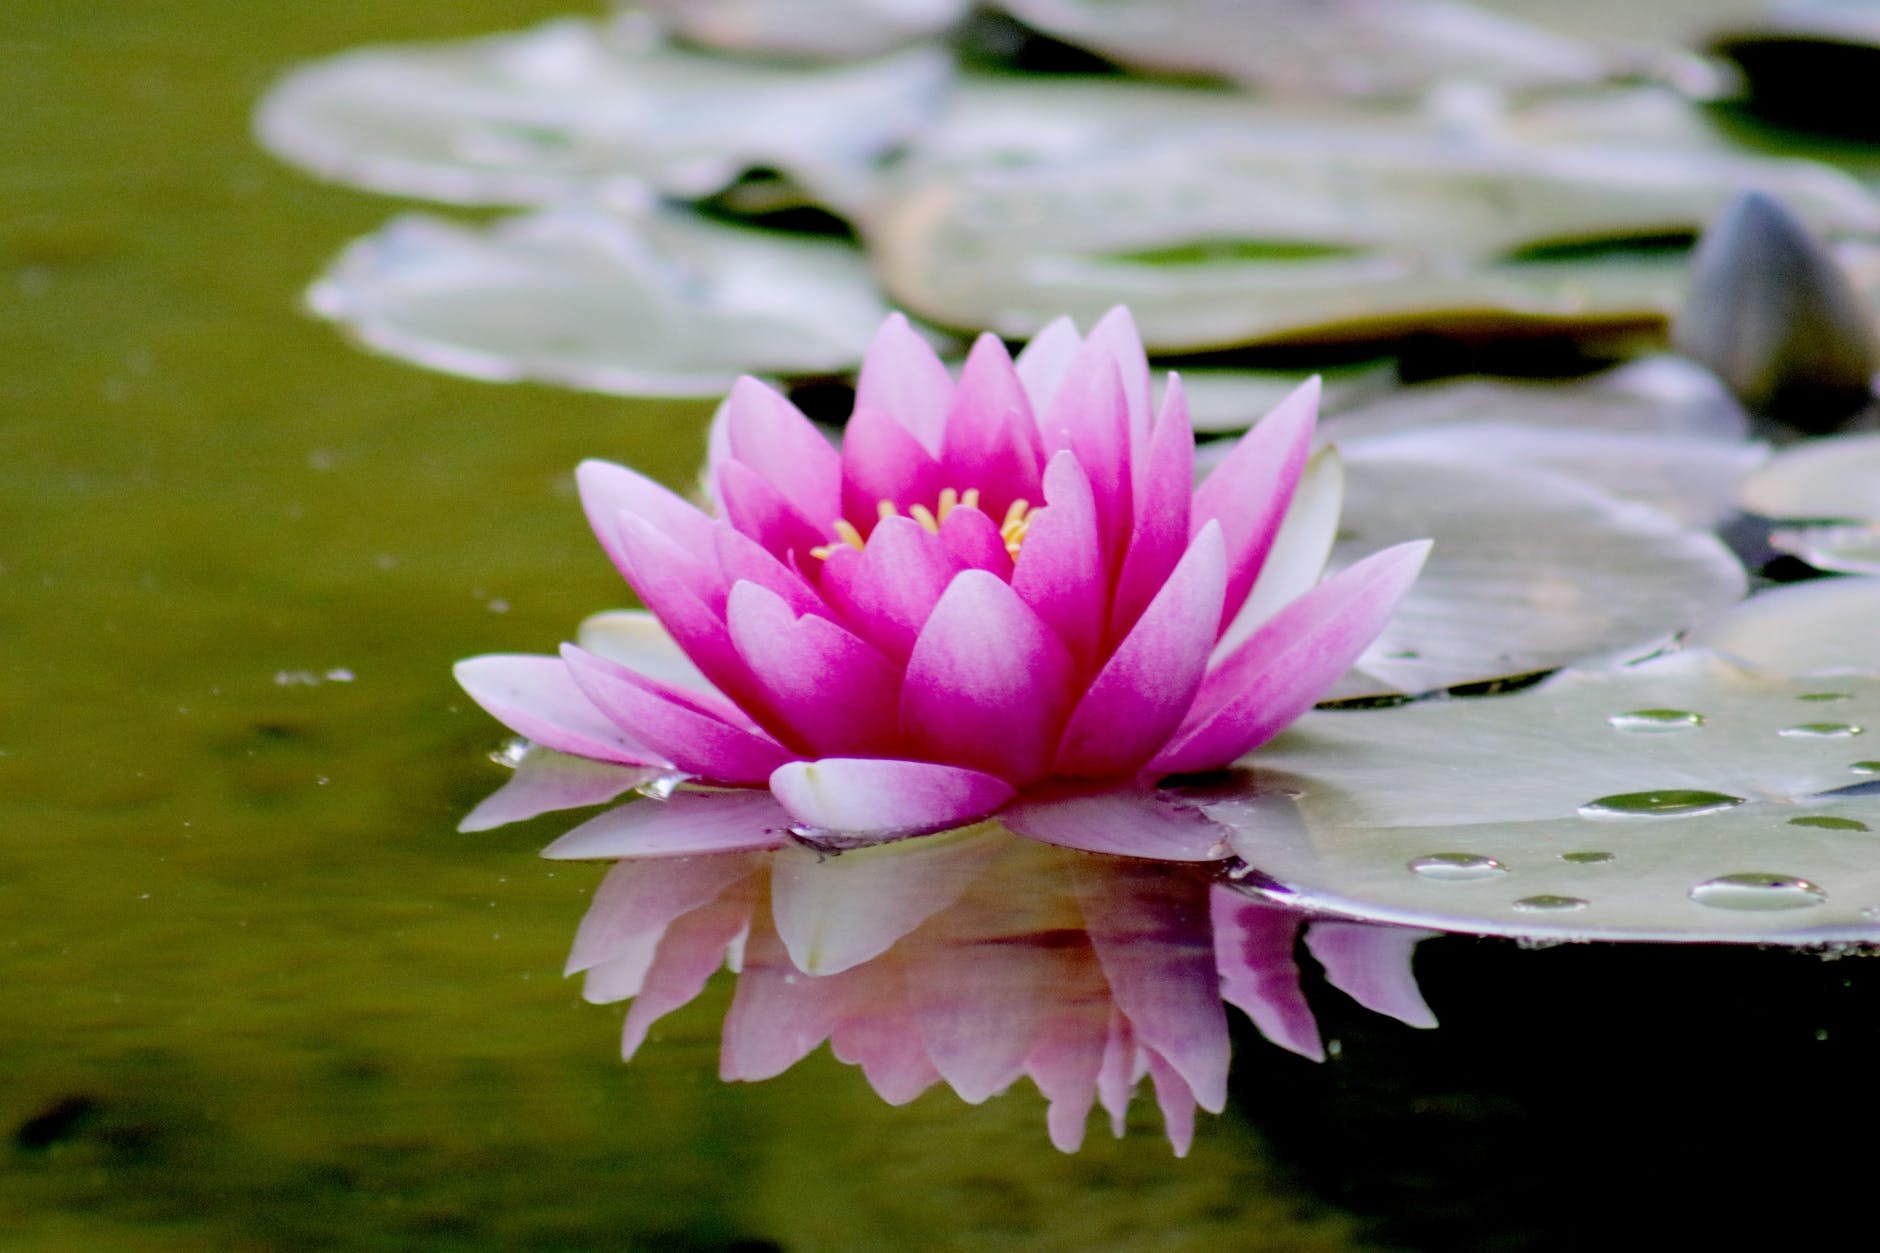 Une fleur de lotus rose (Image : Pixabay)